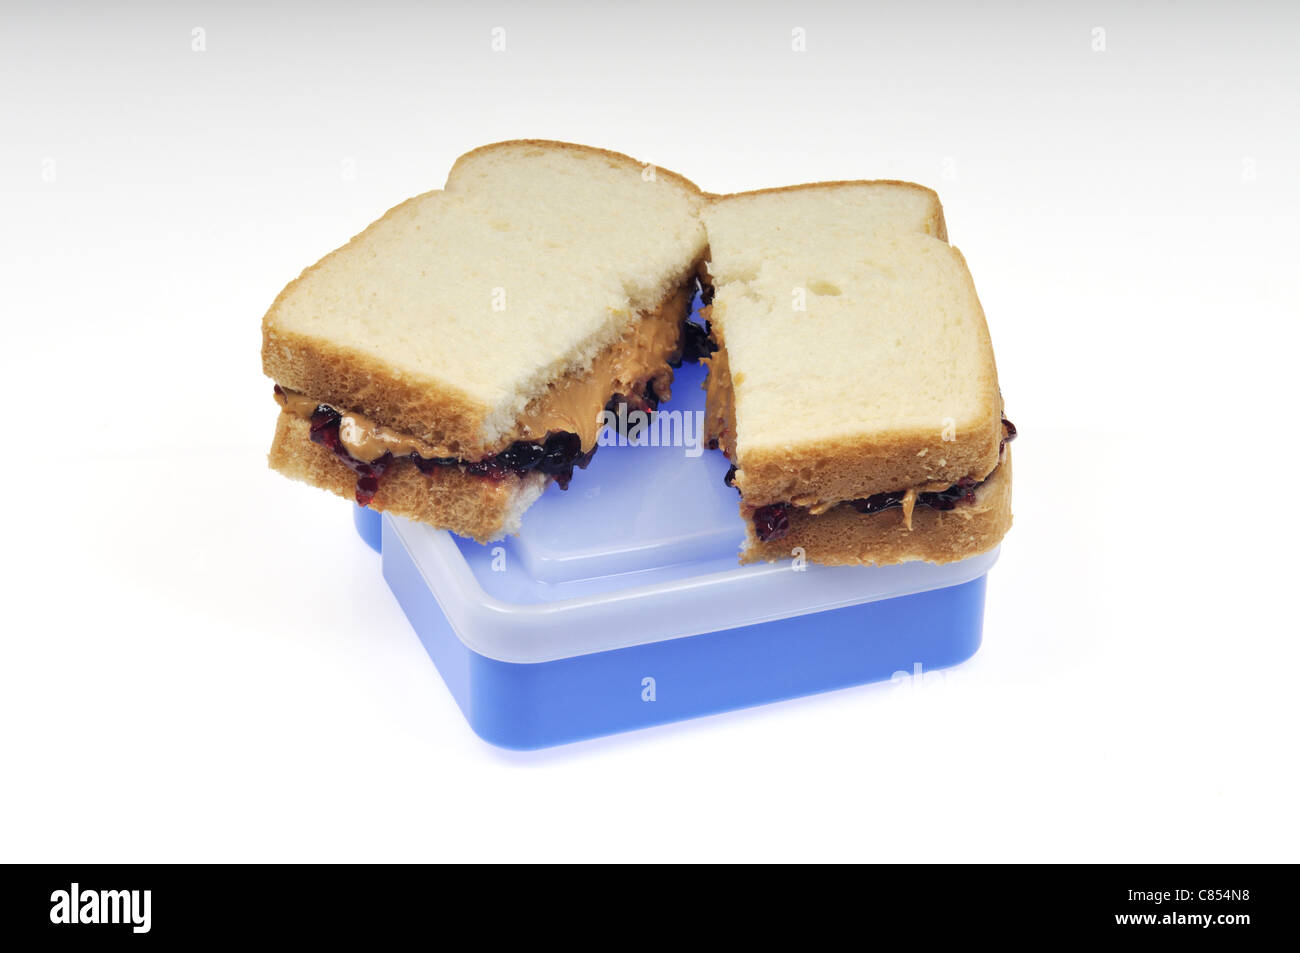 Burro di arachidi e gelatina in sandwich di pane bianco sulla parte superiore del pranzo in plastica scatola contenitore. Foto Stock